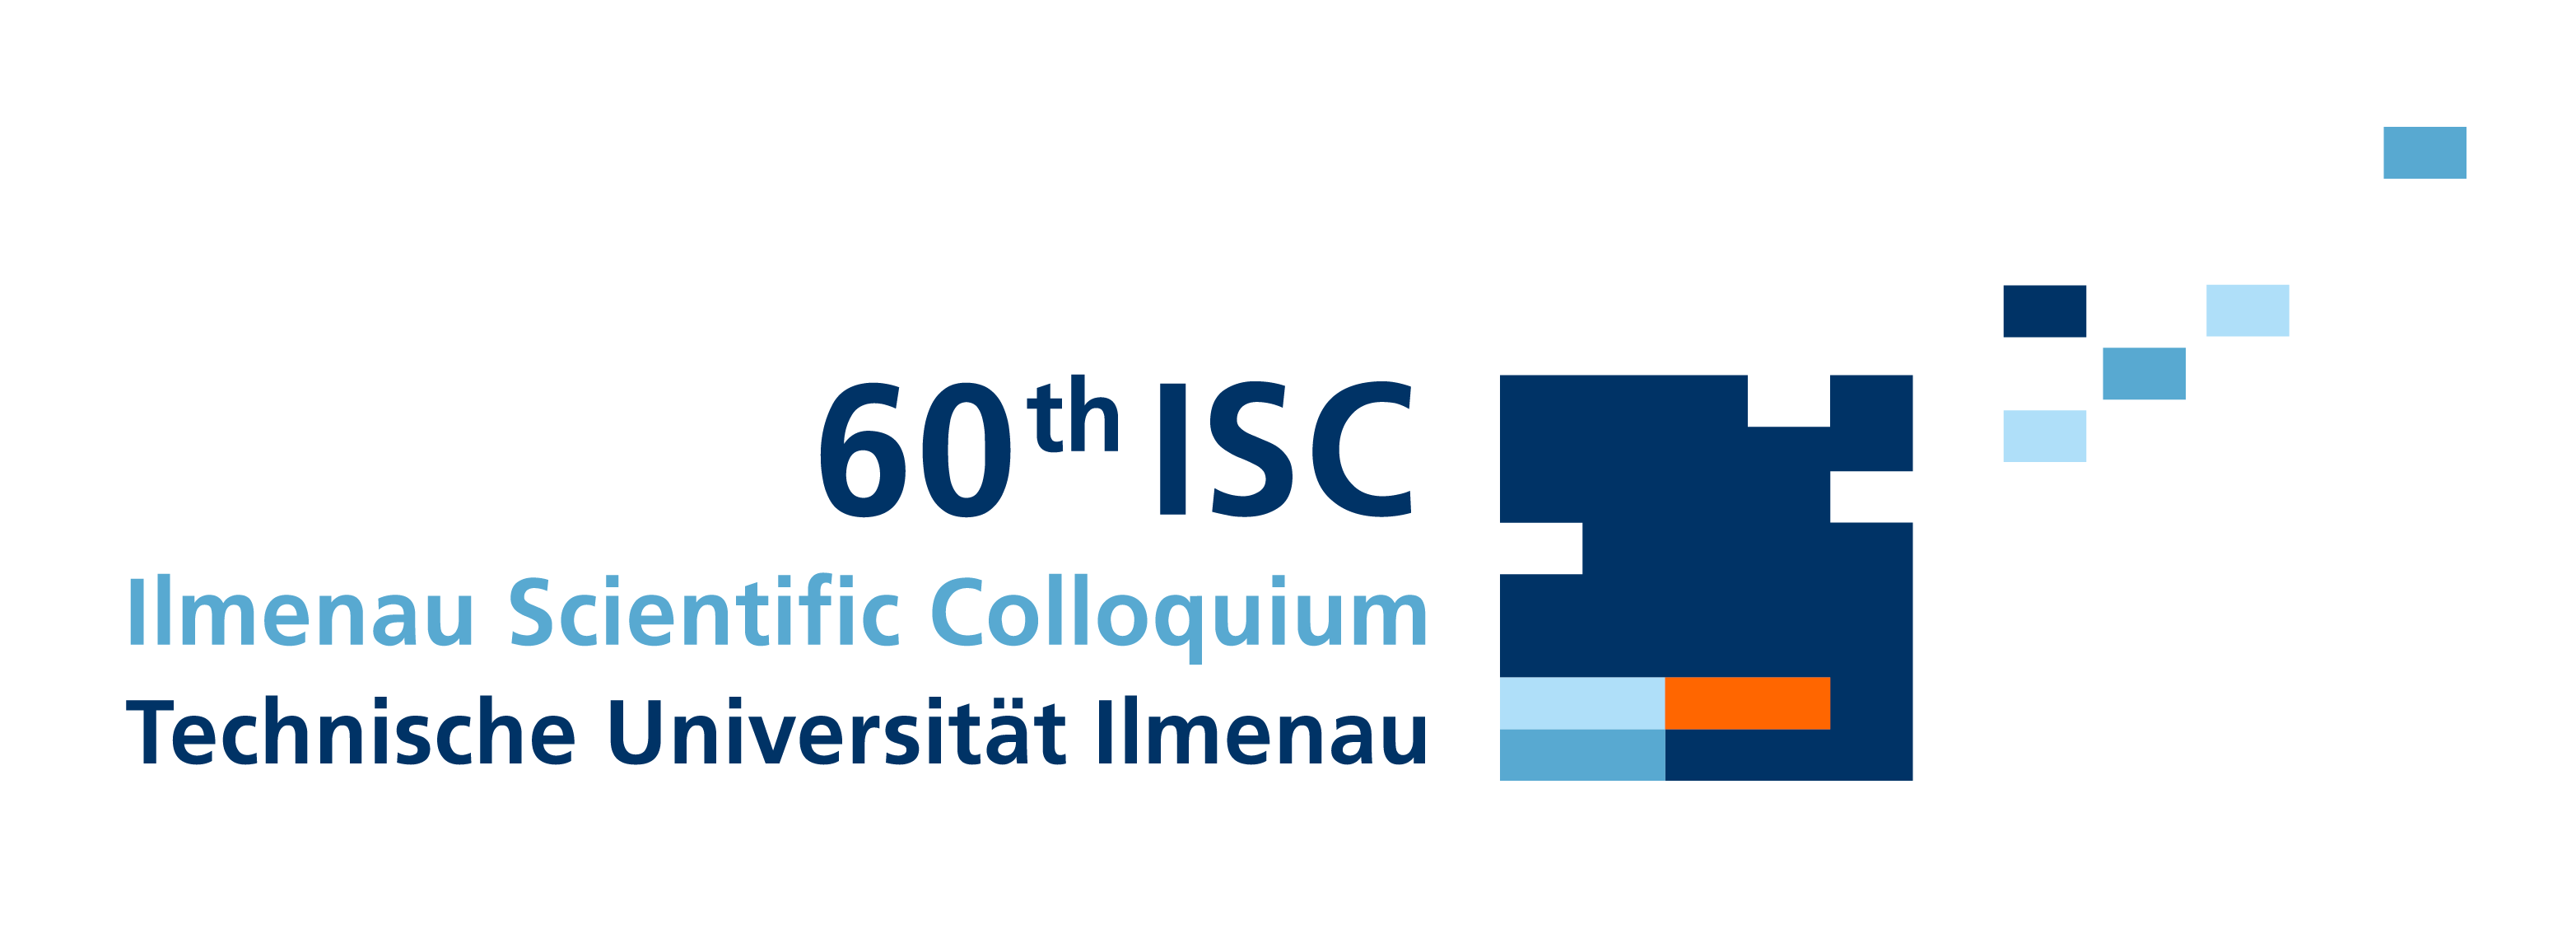 60th Ilmenau Scientific Colloquium 